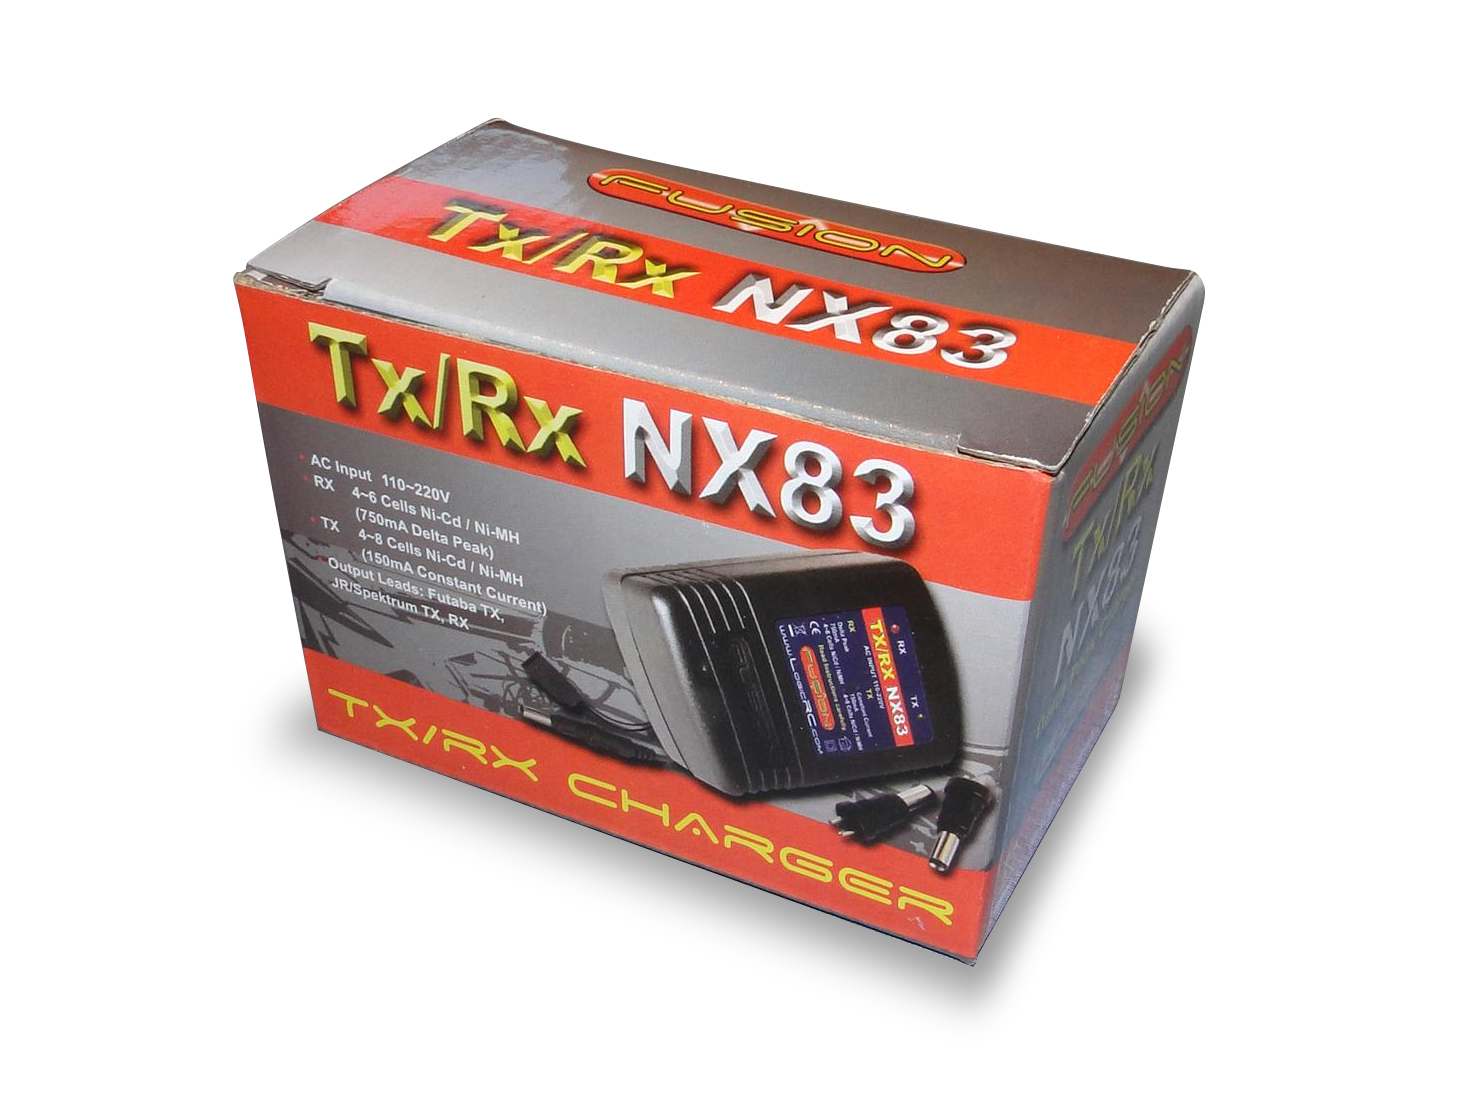 Fusion NX83 émetteur et récepteur DELTA PEAK AC NiMH Nicd RC Chargeur FS-NX83 